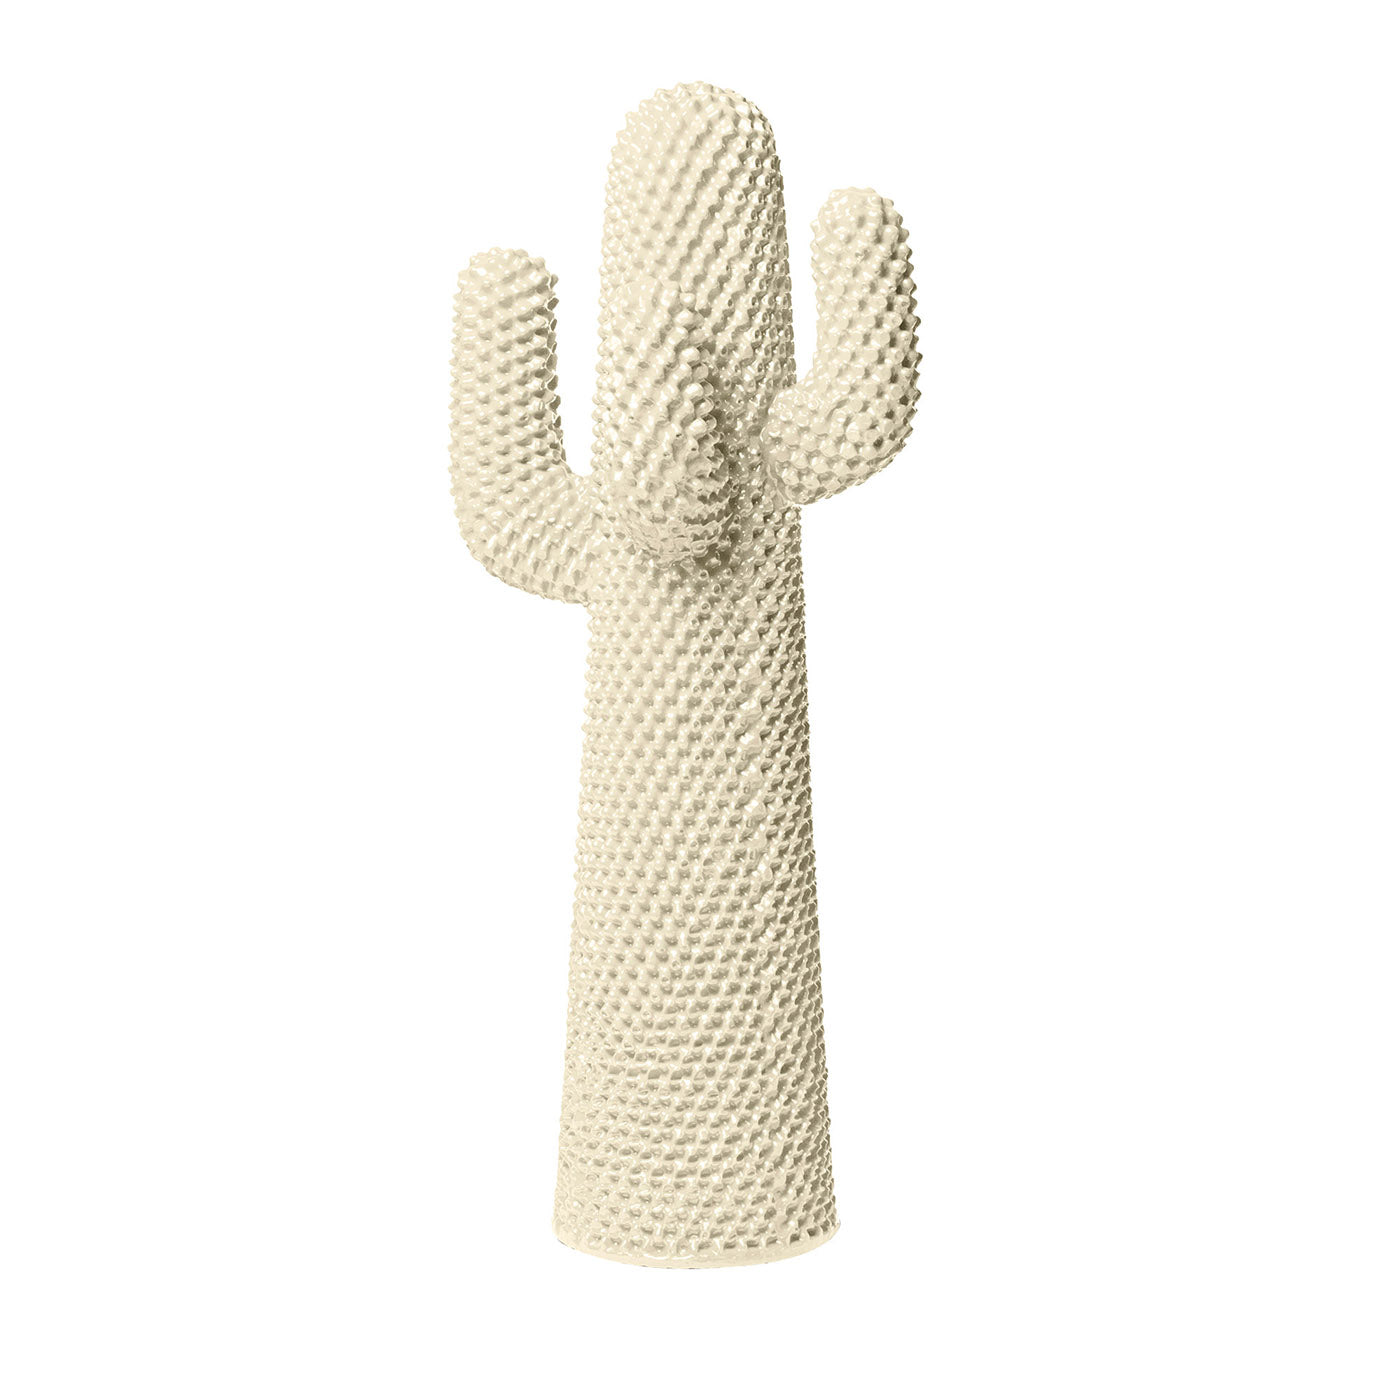 Otro perchero de cactus blanco de Drocco/Mello - Vista principal